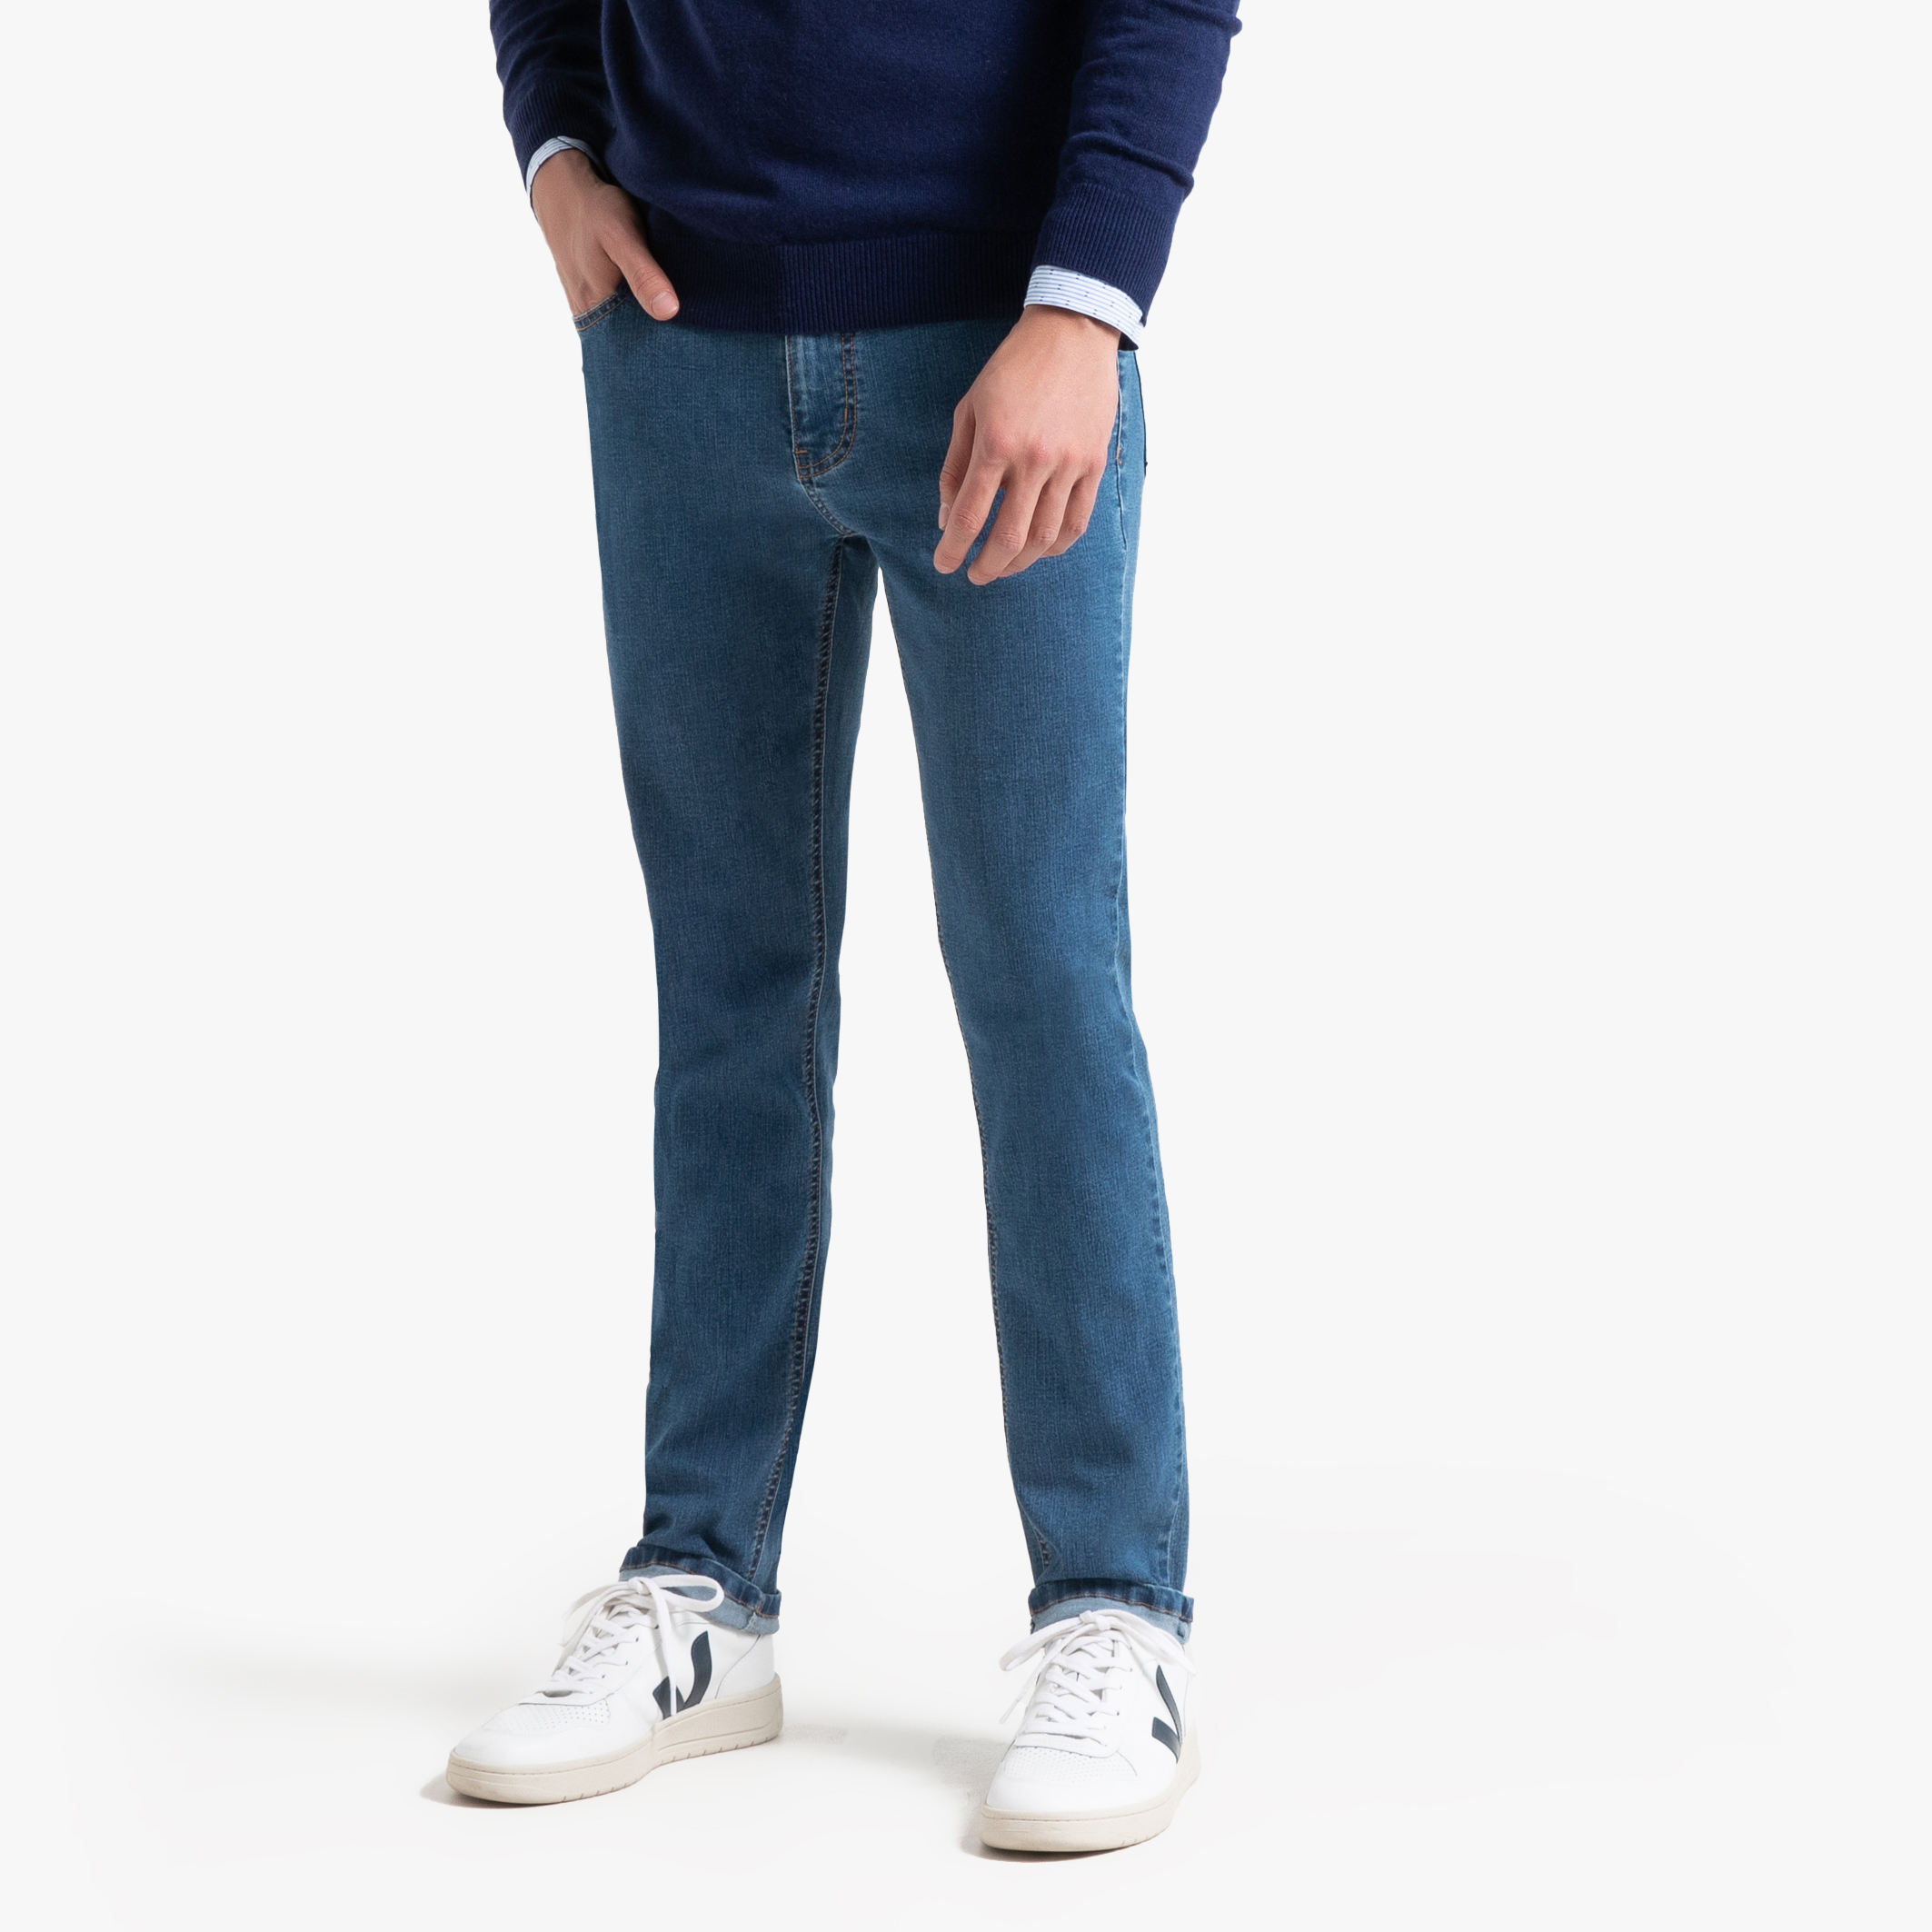 Распродажа мужских брюк больших размеров по привлекательным ценам – купить мужскиебрюки для полных со скидкой в каталоге интернет-магазина